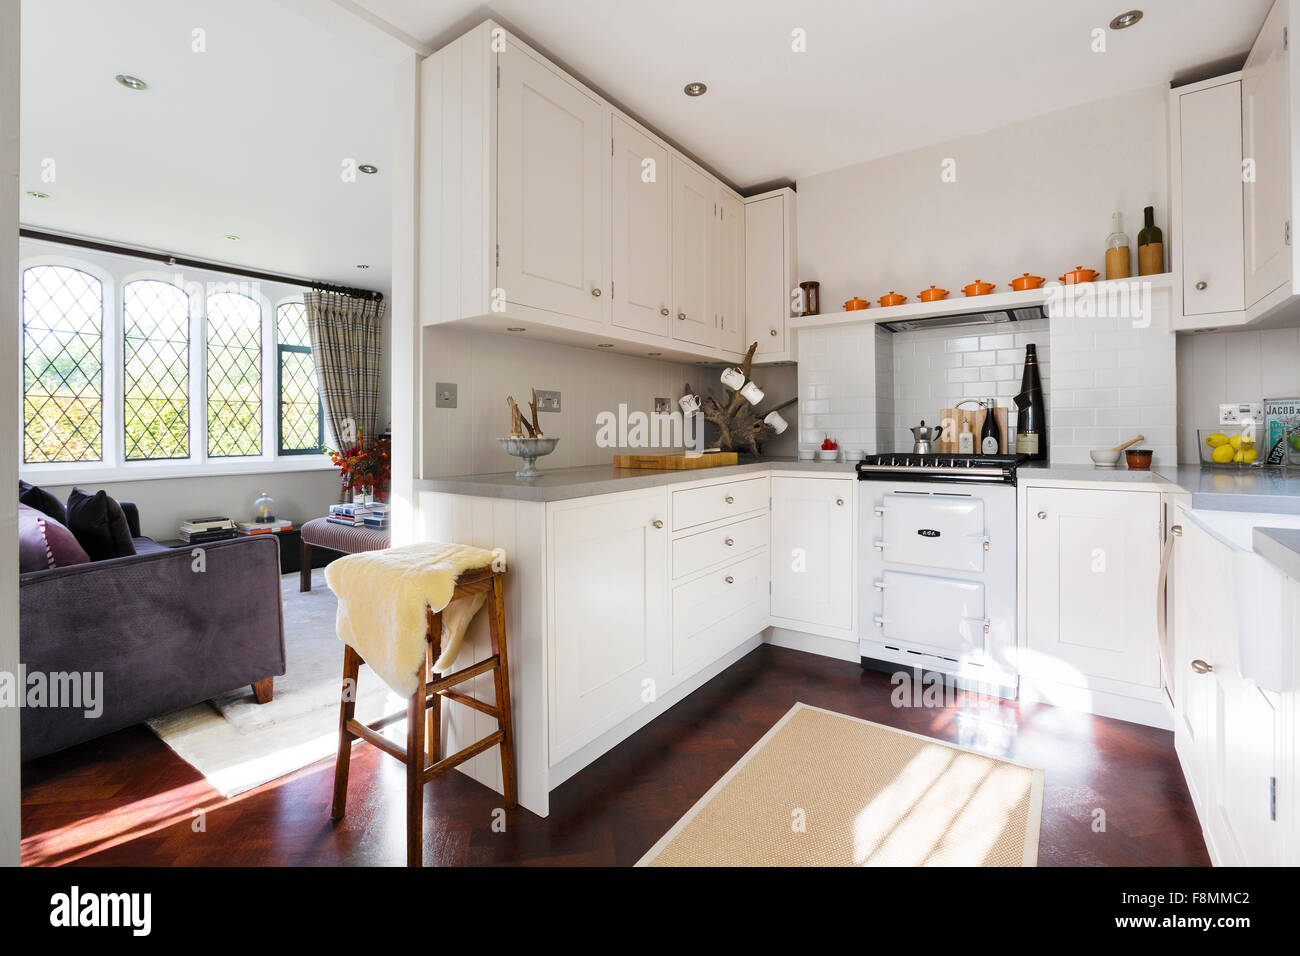 Grad II aufgeführten Country Lodge in Weybridge. Der Küchenbereich mit weiß gestrichenen Einheiten und traditionellen Aga-Style-Ofen-Sortiment Stockfoto